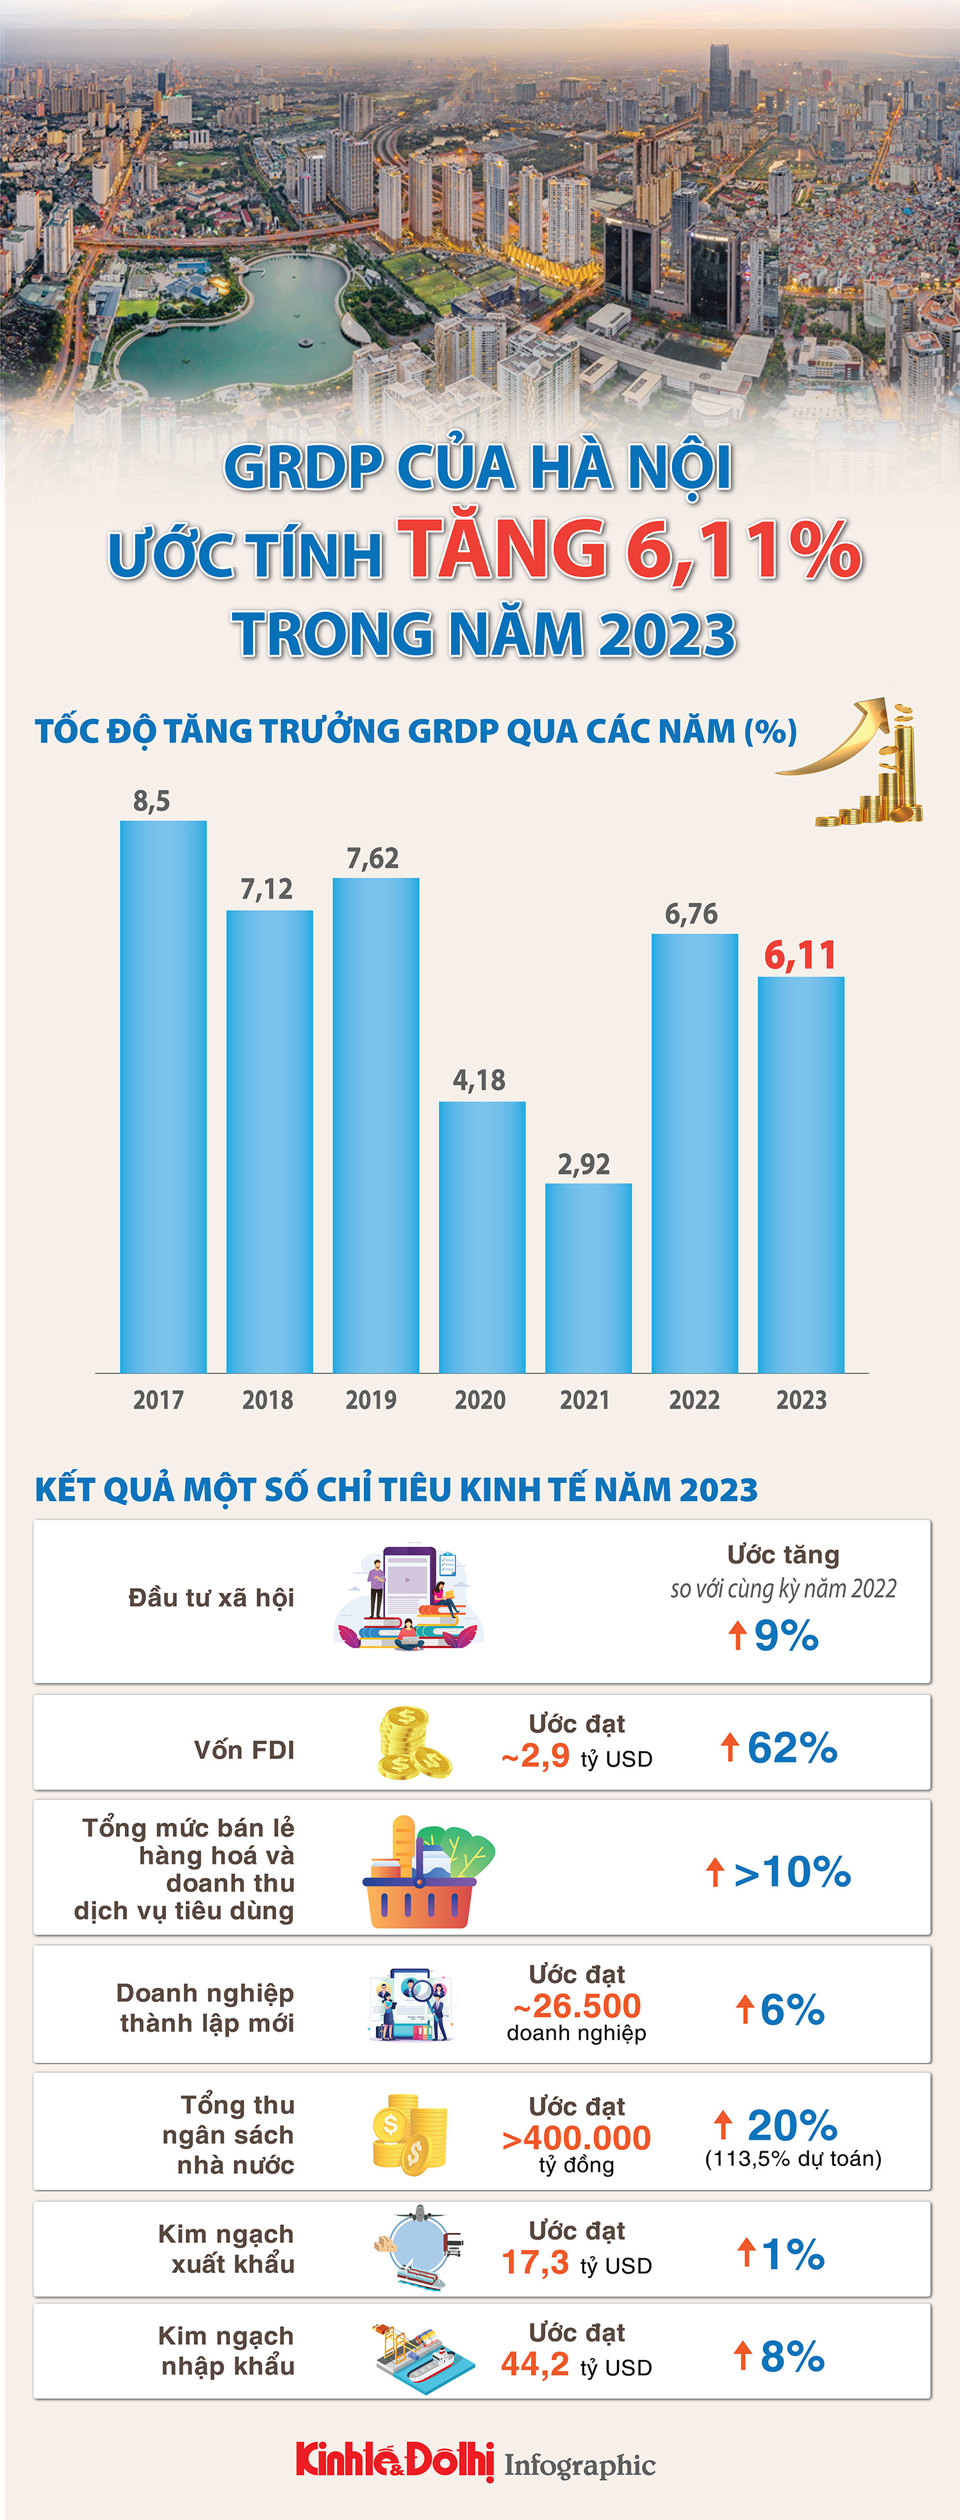 GRDP của Hà Nội trong năm 2023 ước tính tăng 6,11% - Ảnh 1